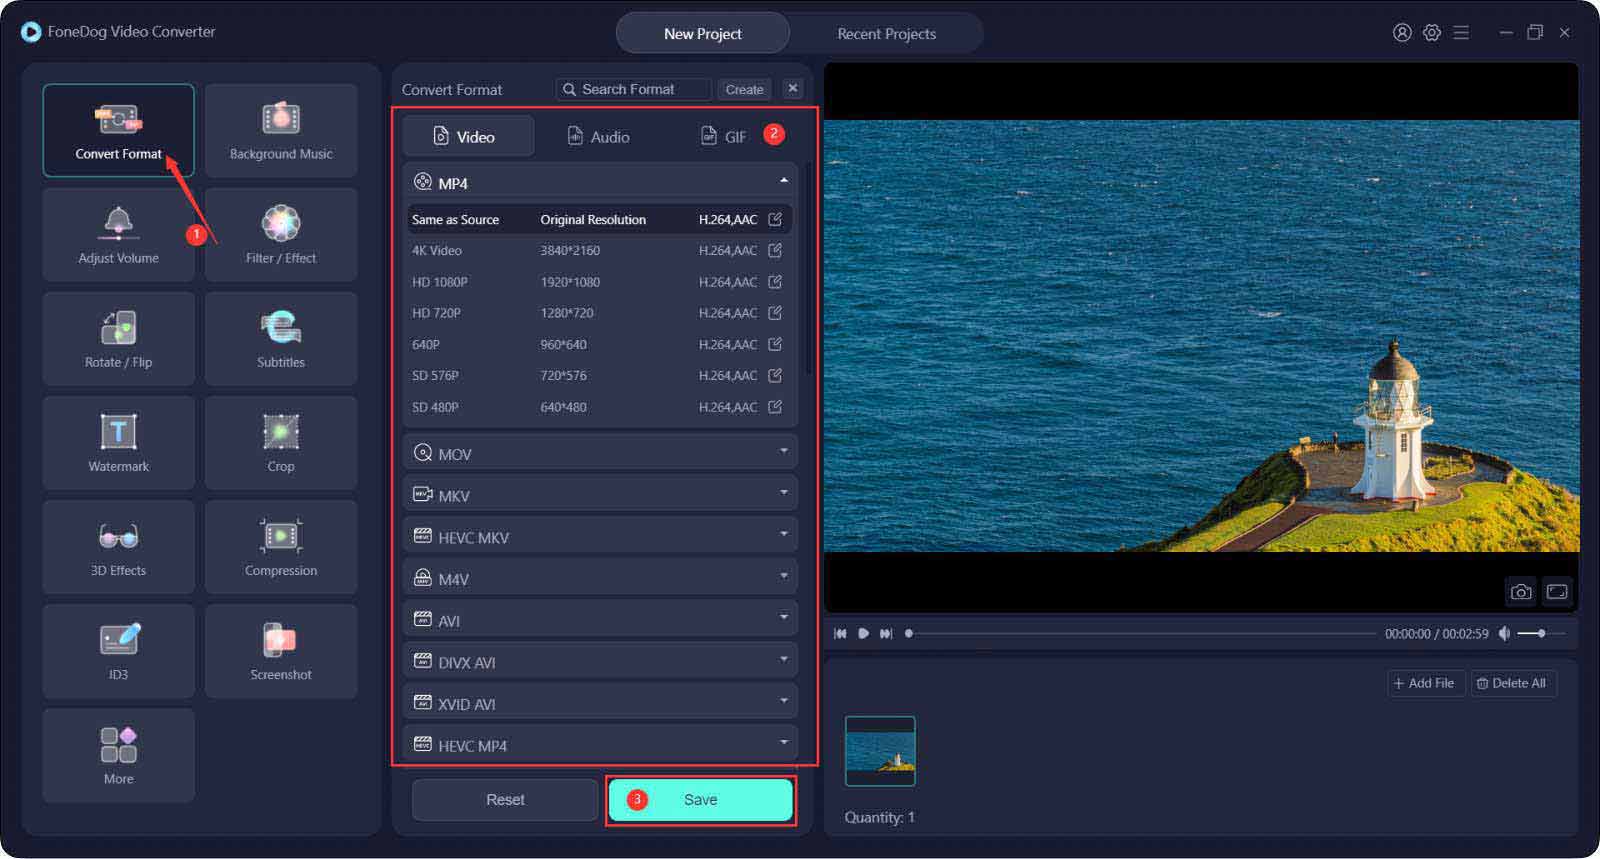 Najlepsze narzędzia do zmiany rozdzielczości wideo: FoneDog Video Converter